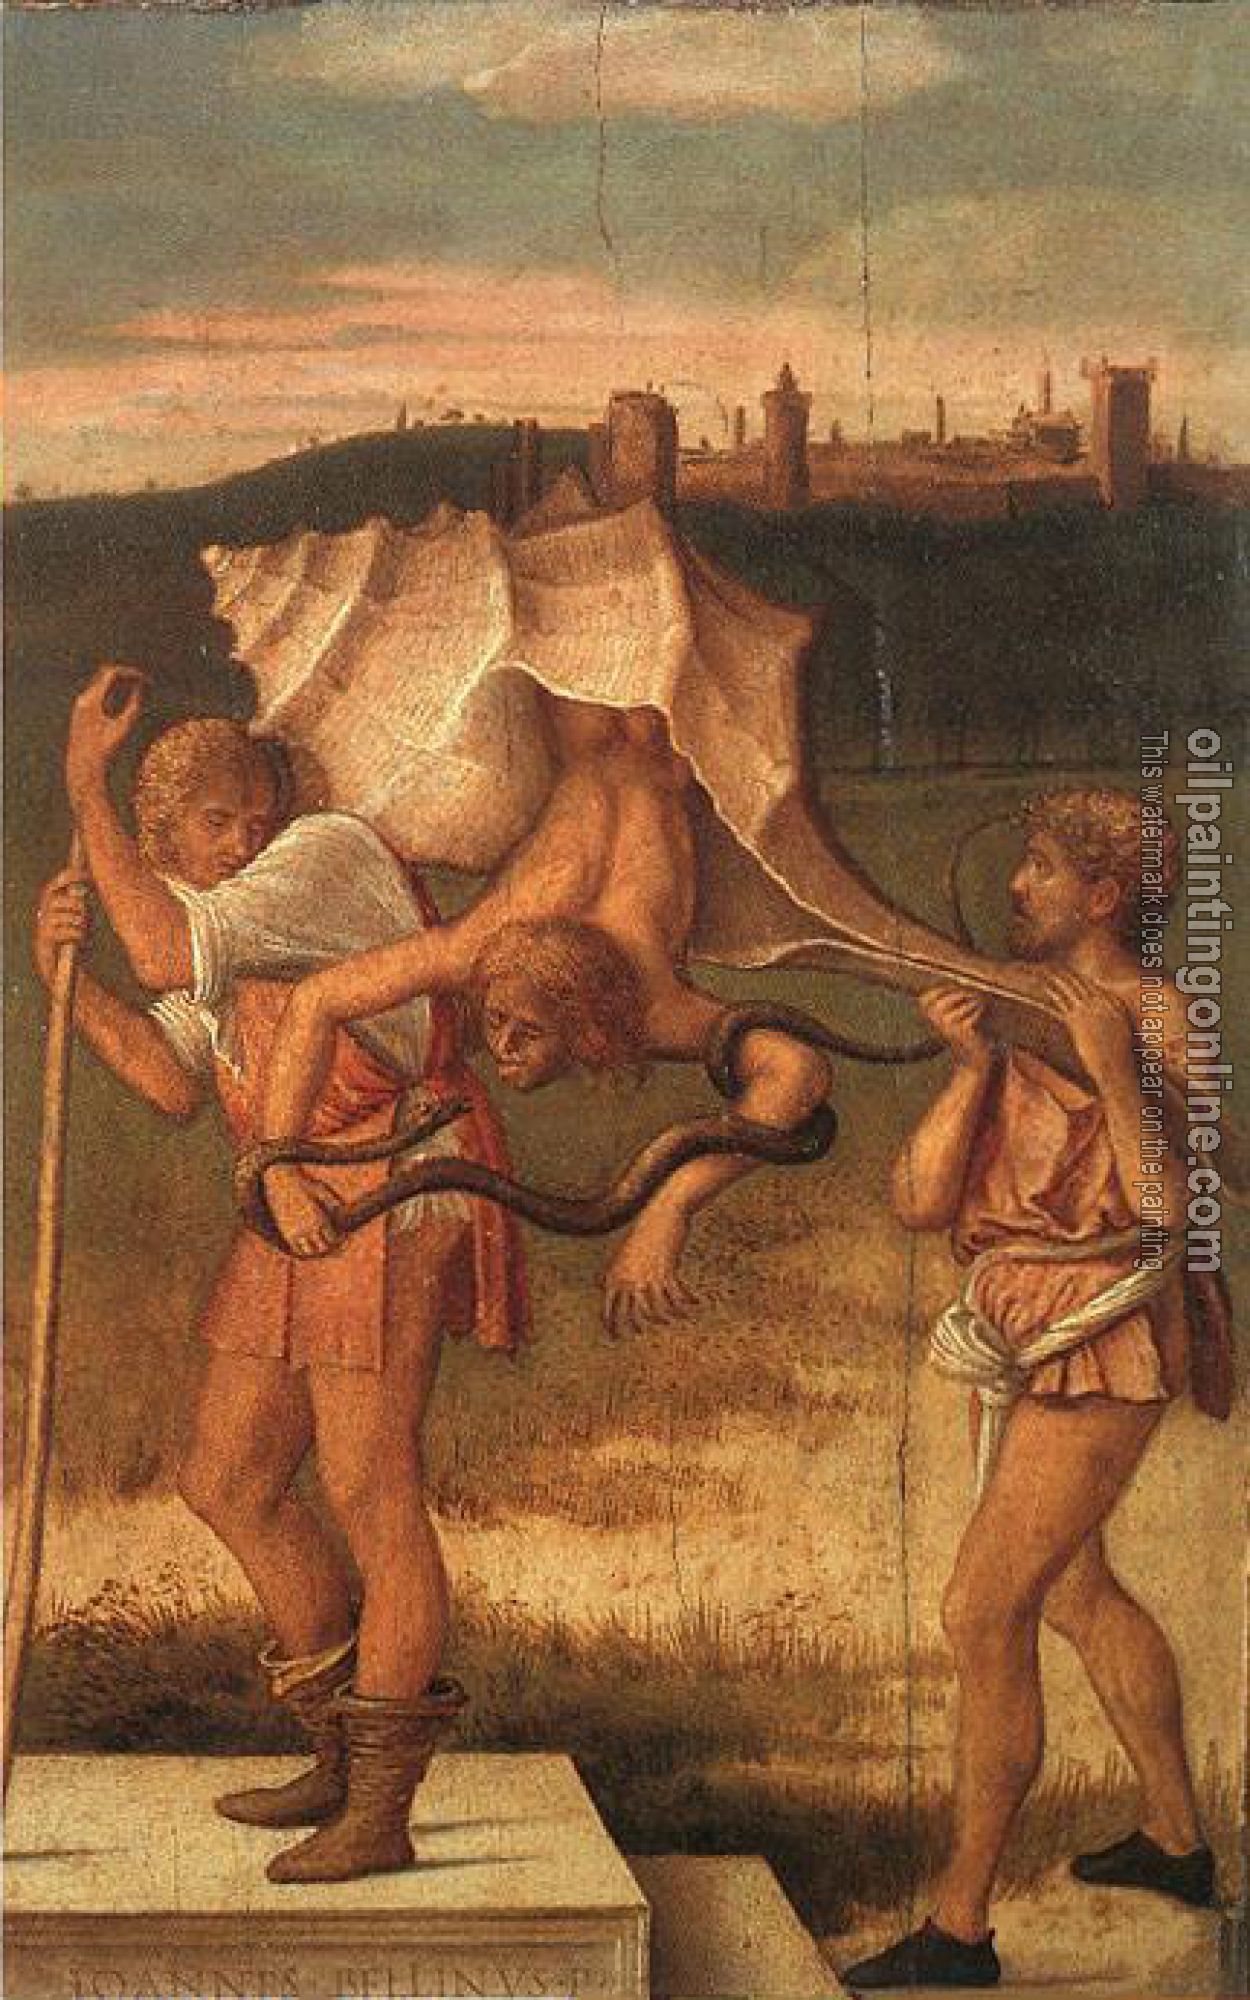 Bellini, Giovanni - Four allegories 2